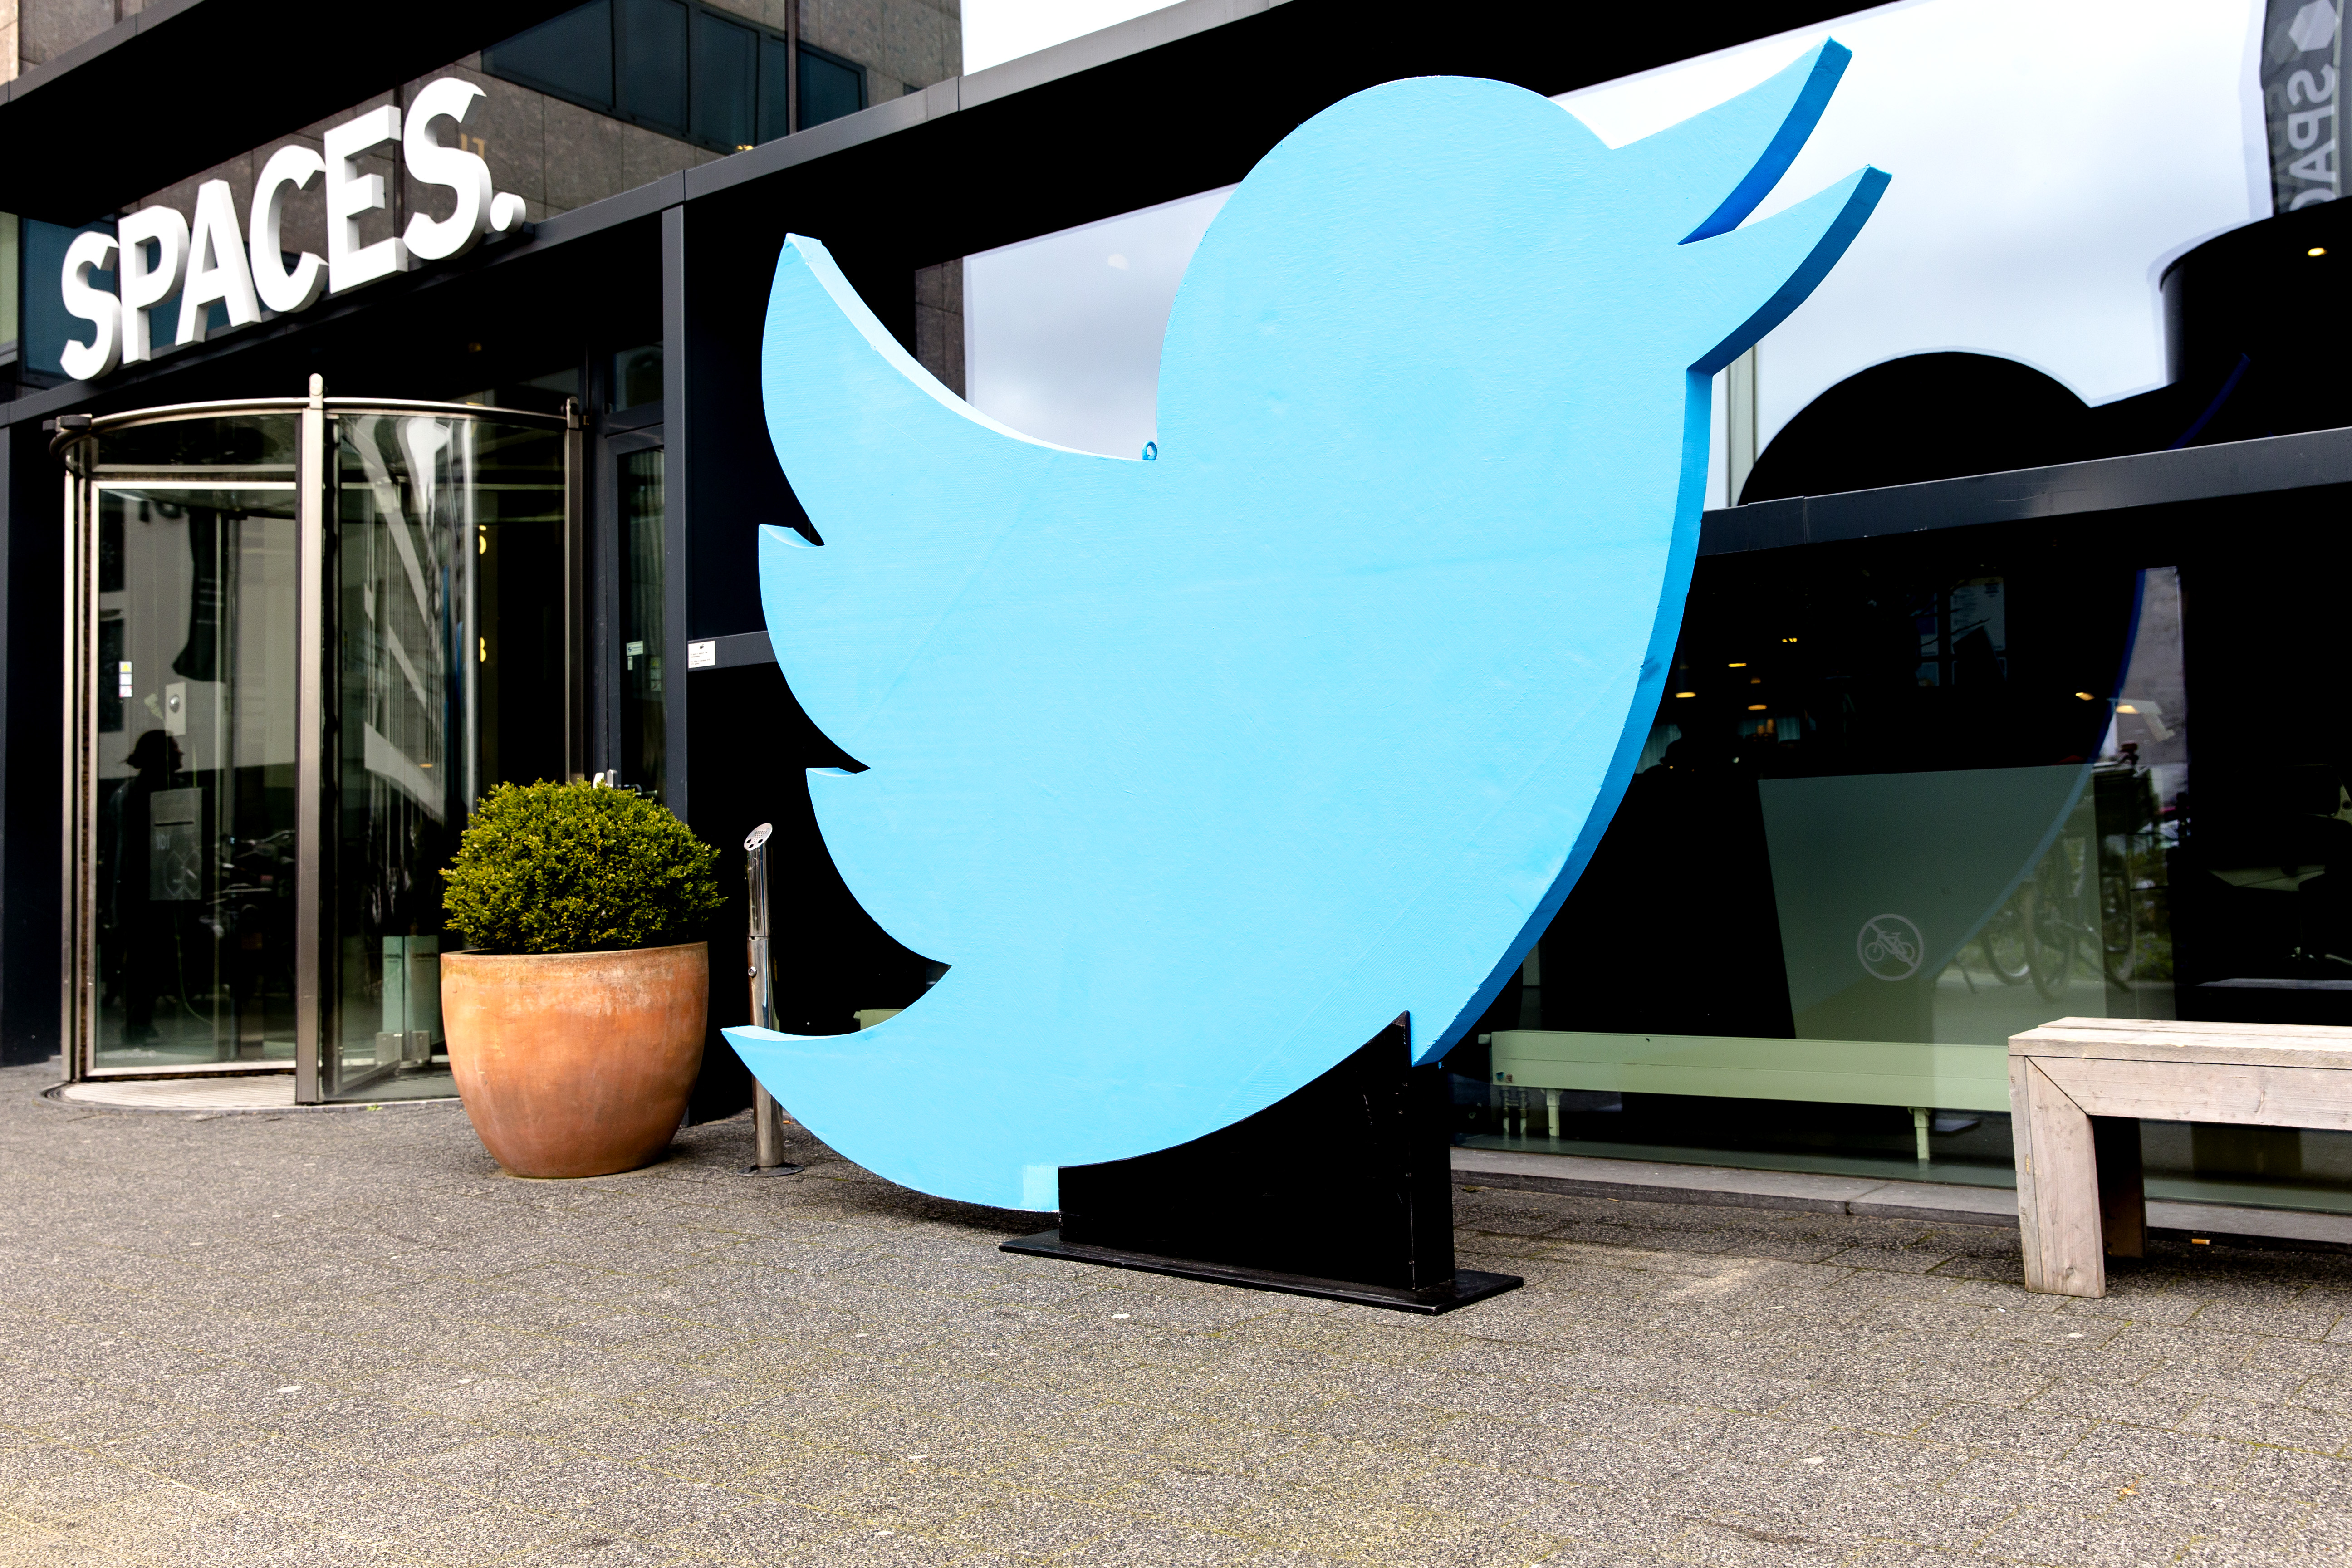 Twitter vertrekt uit Amsterdam. Het bedrijf sluit zijn kantoor aan de Zuidas. Dat verhaal ging al, maar is woensdag bevestigd door Twitter. De dienst wil wereldwijd enkele honderden werknemers ontslaan om de kosten omlaag te brengen.